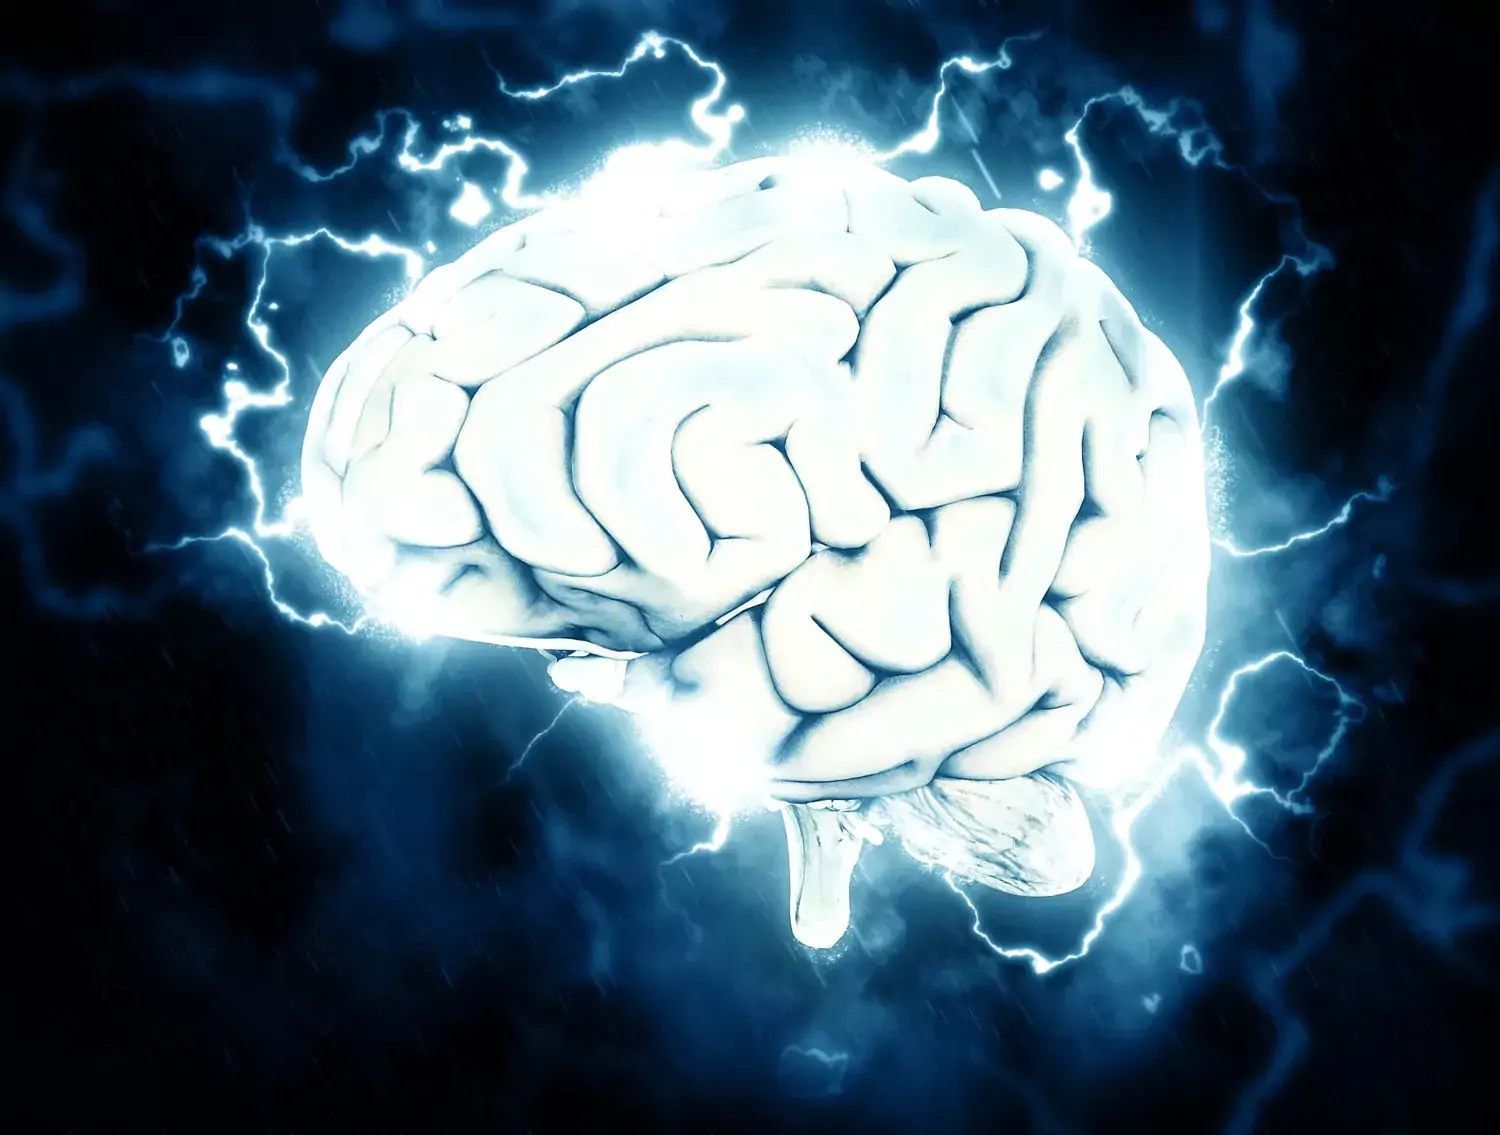 huvudvärk symboliserat av hjärna i vitt mot mörk bakgrund